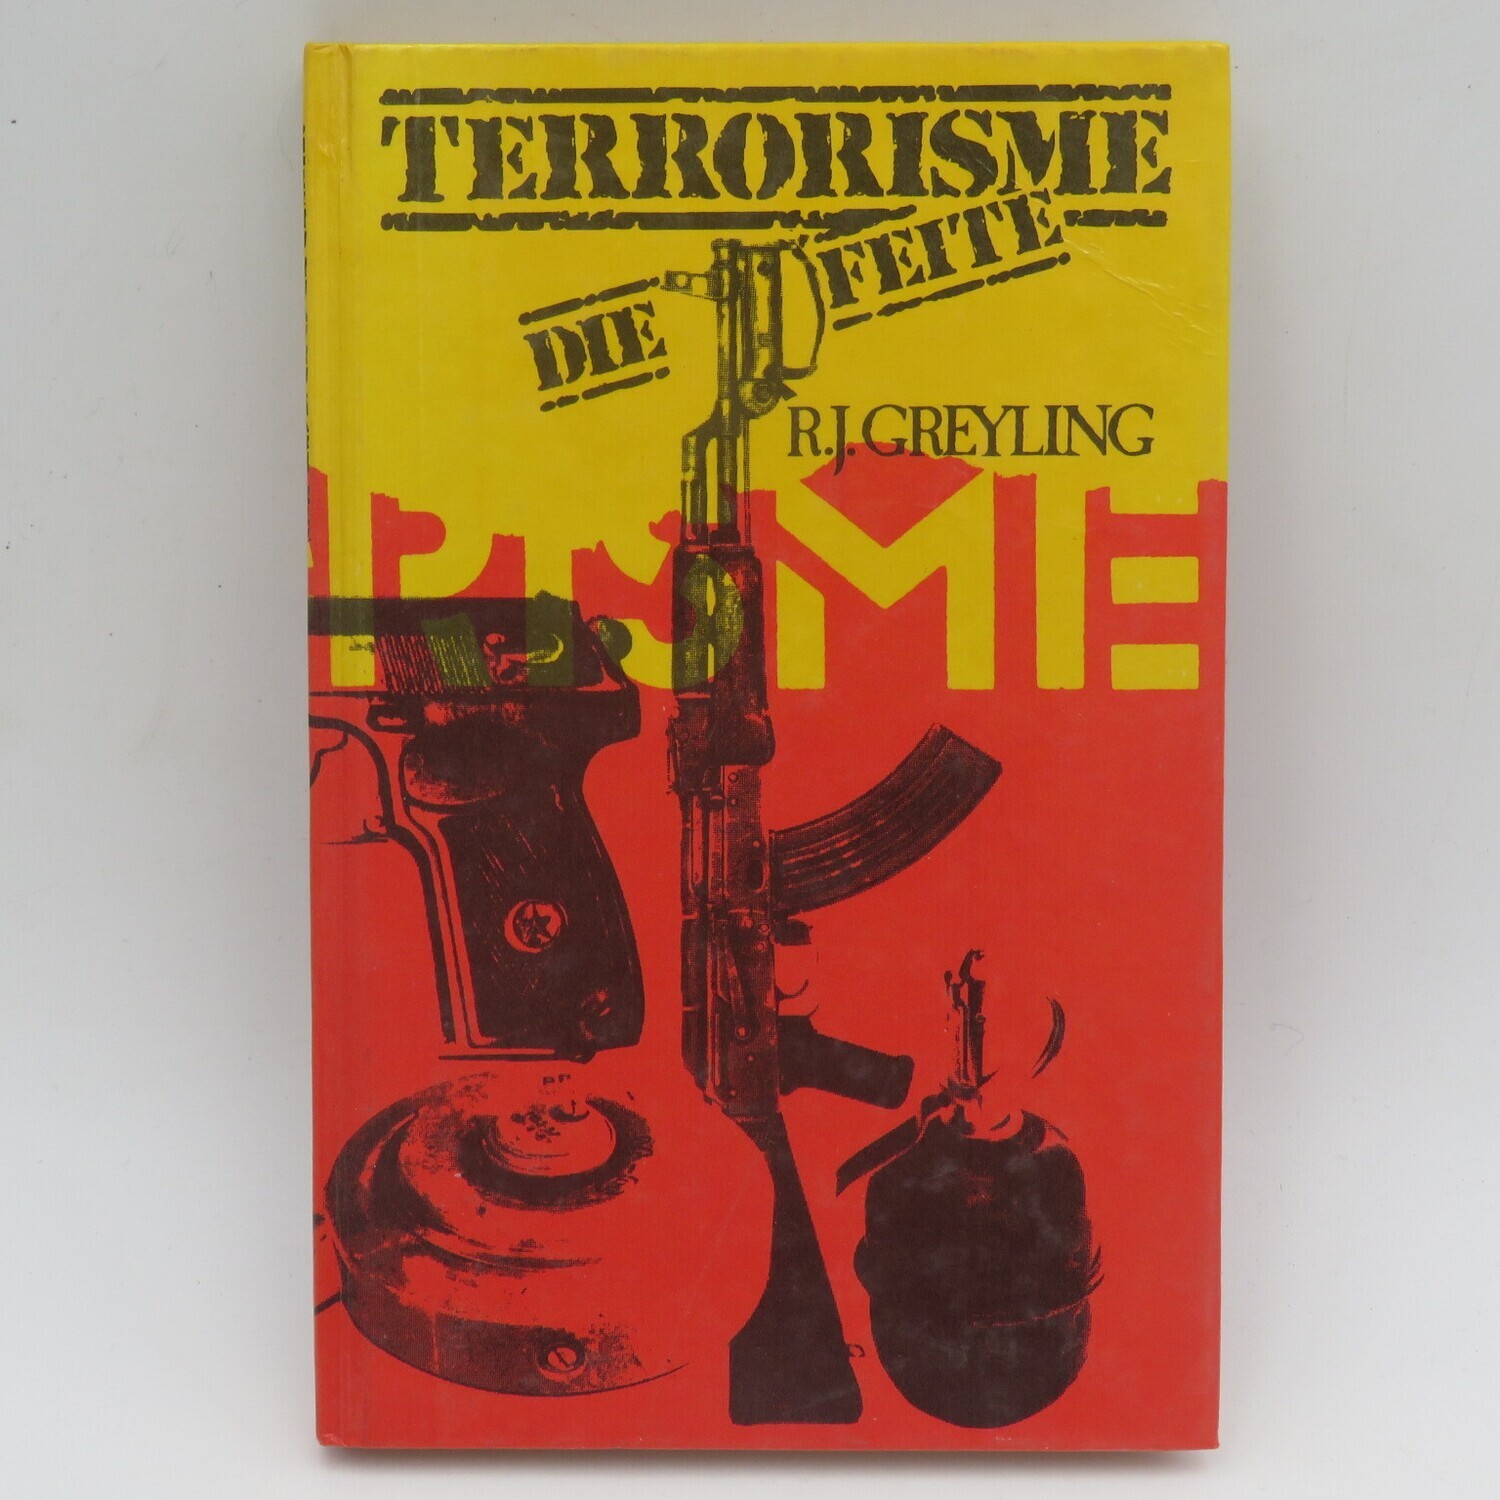 Terrorisme - Die Feite deur R.J Greyling